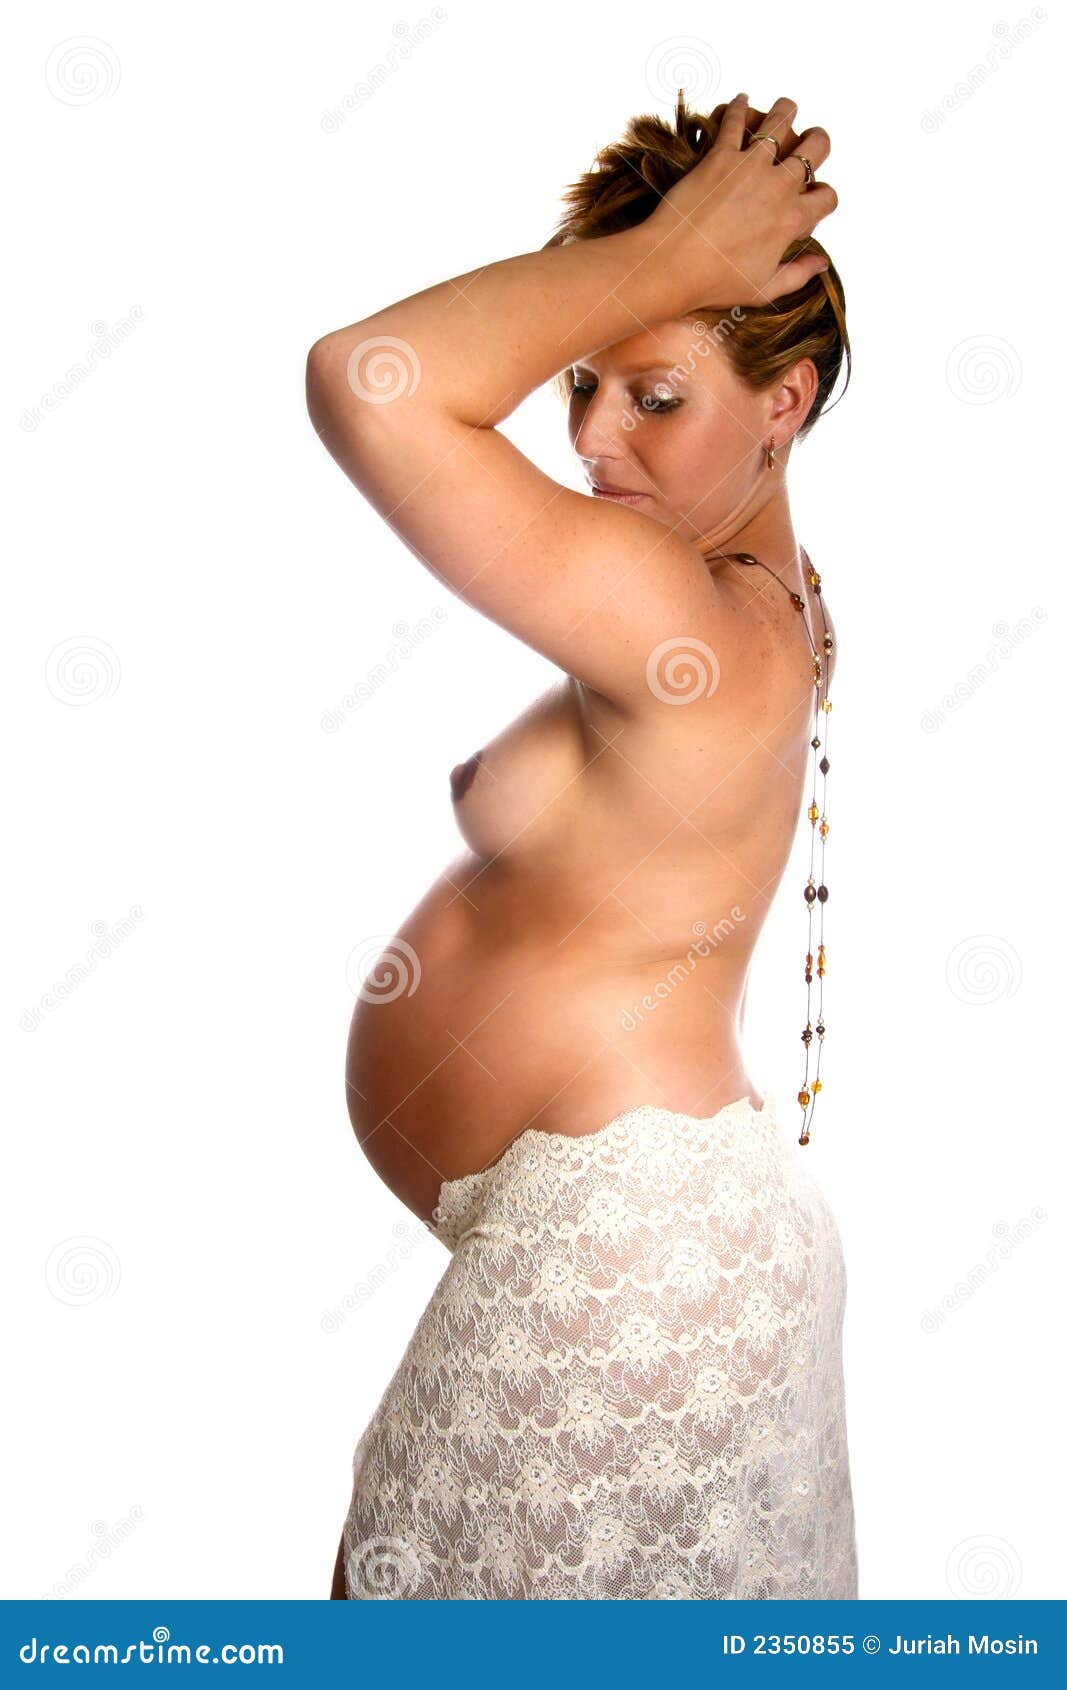 Pregnant Moms Photos 114